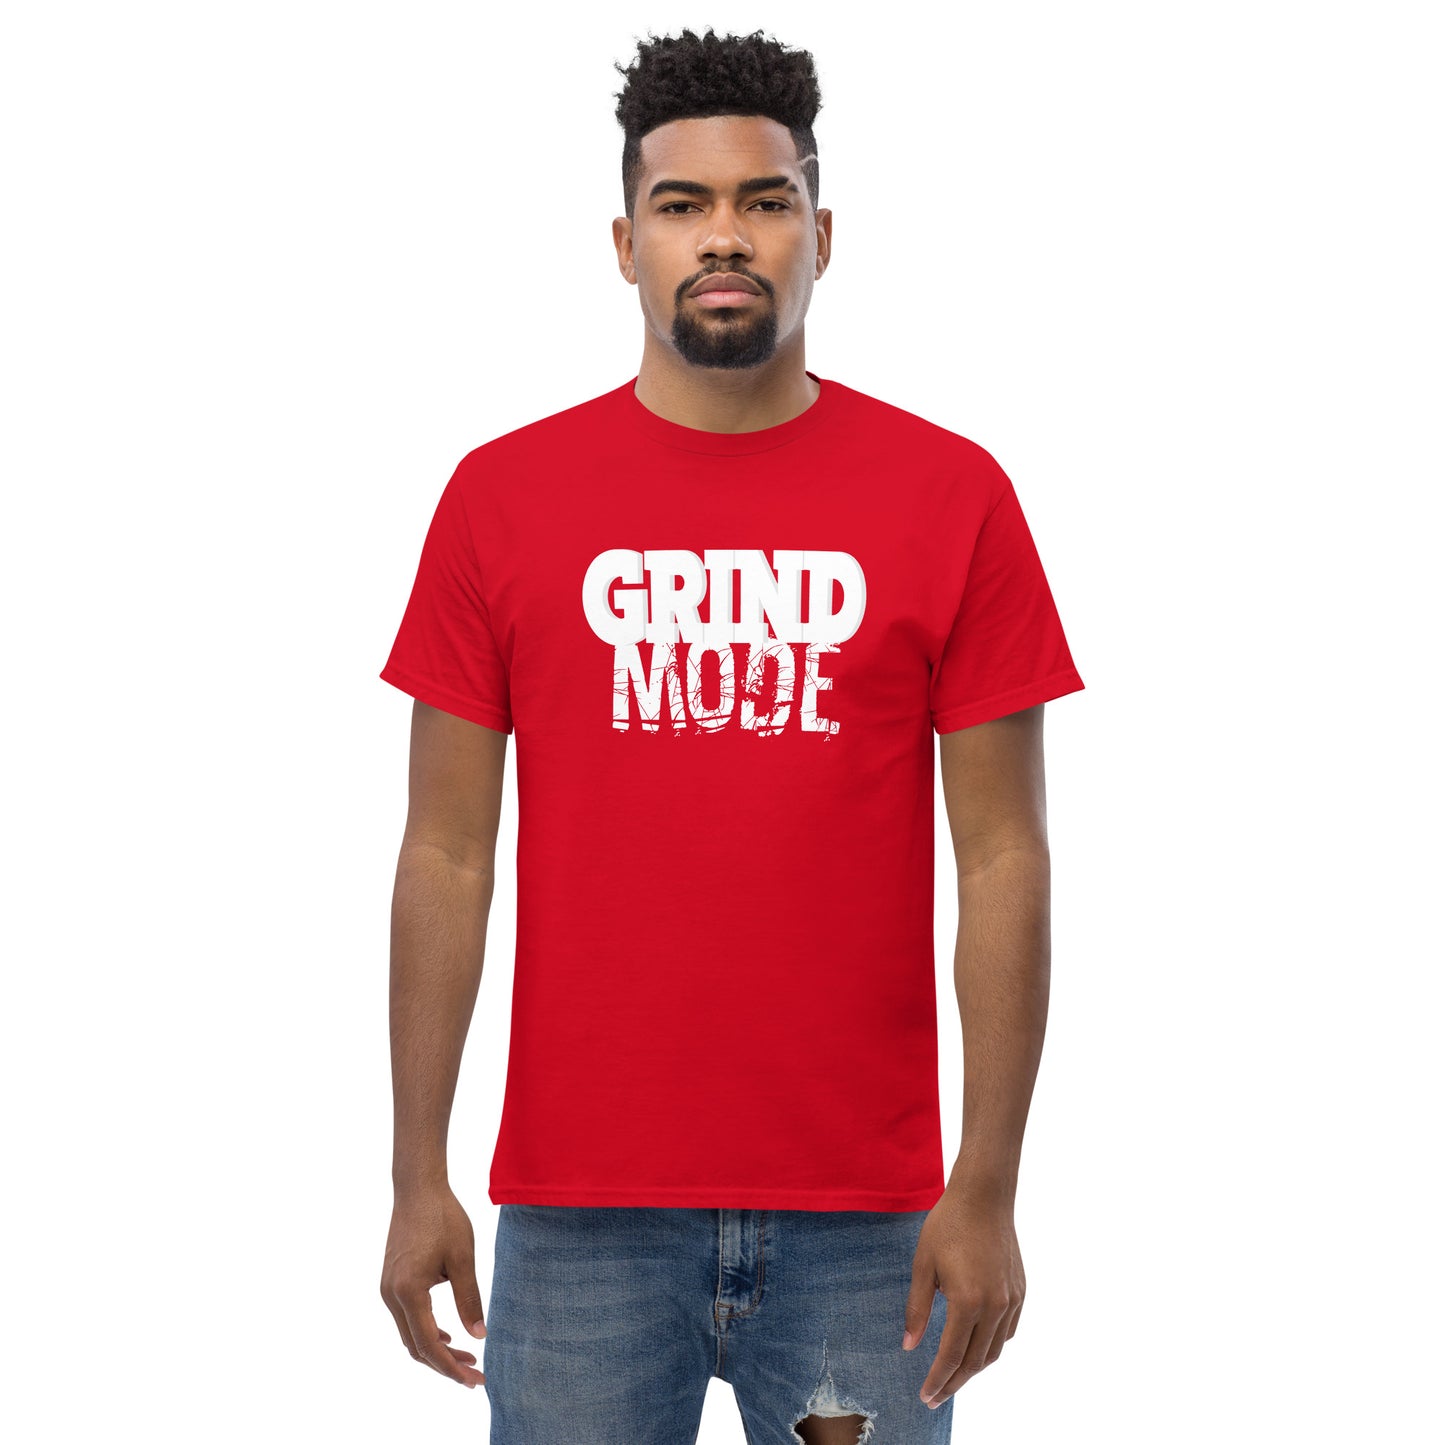 Grind Mode Men's classic tee